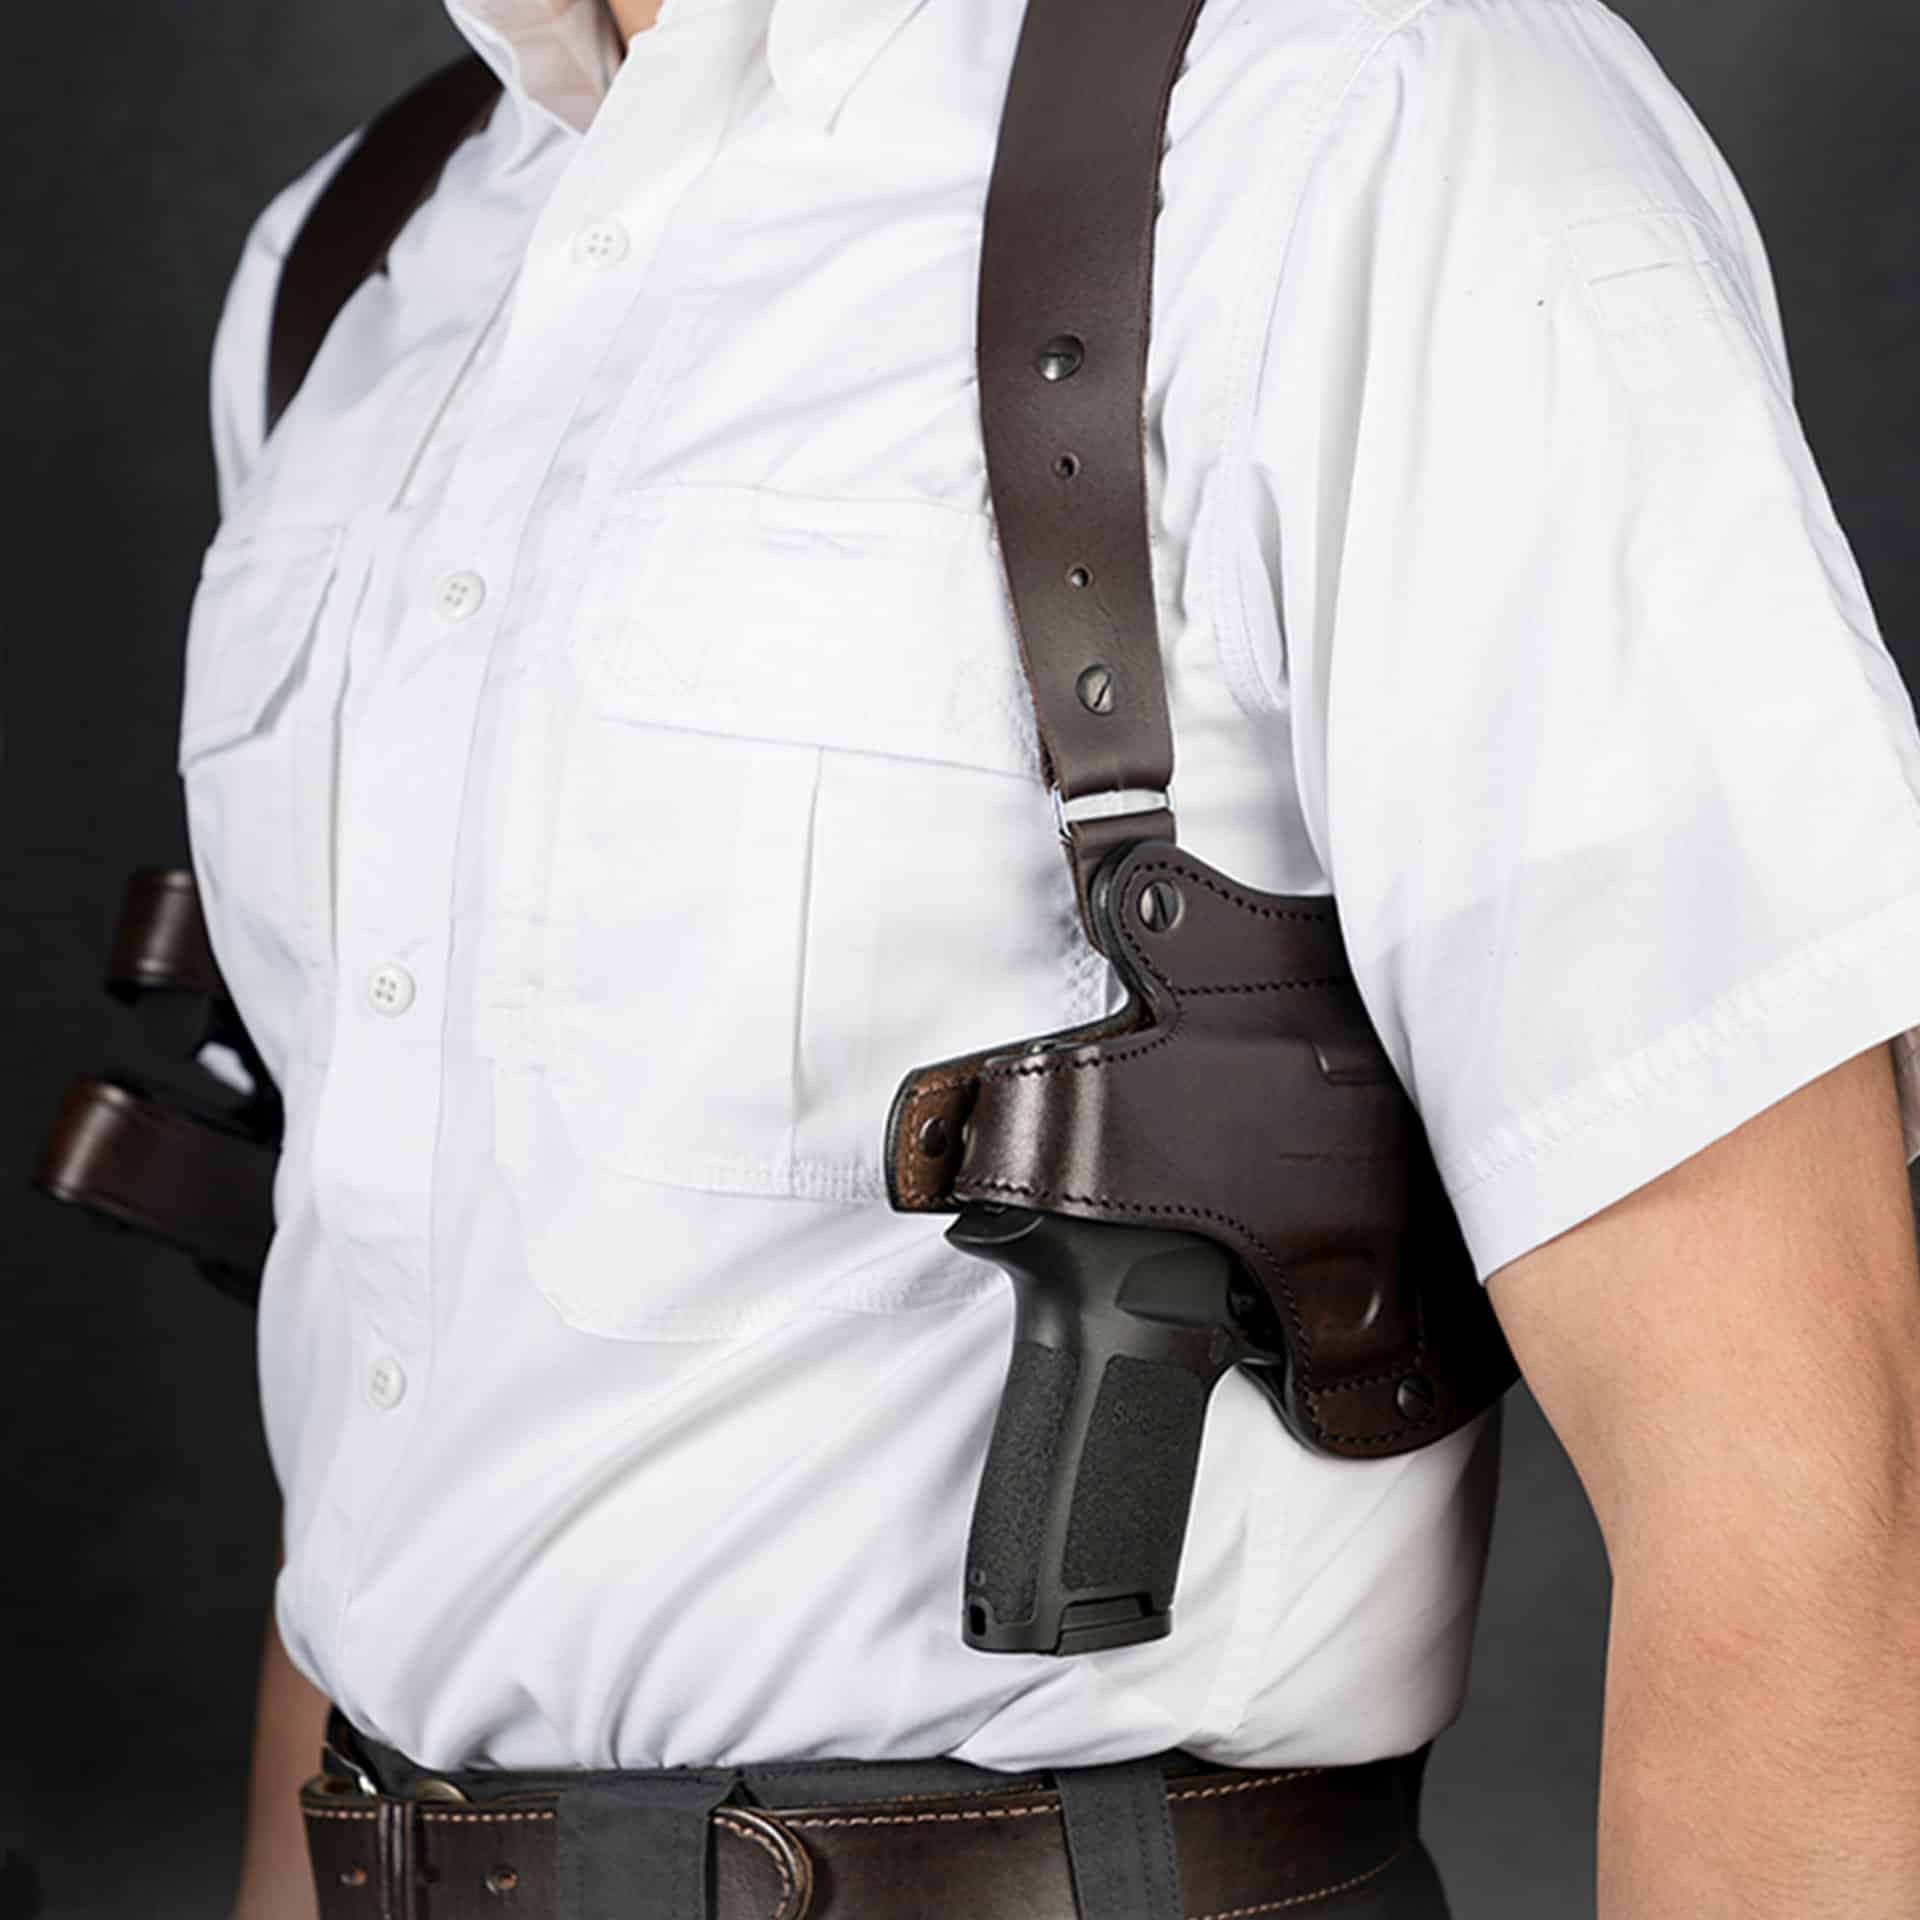 glock-19-shoulder-holster-model-x400-kirkpatrick-leather-holsters